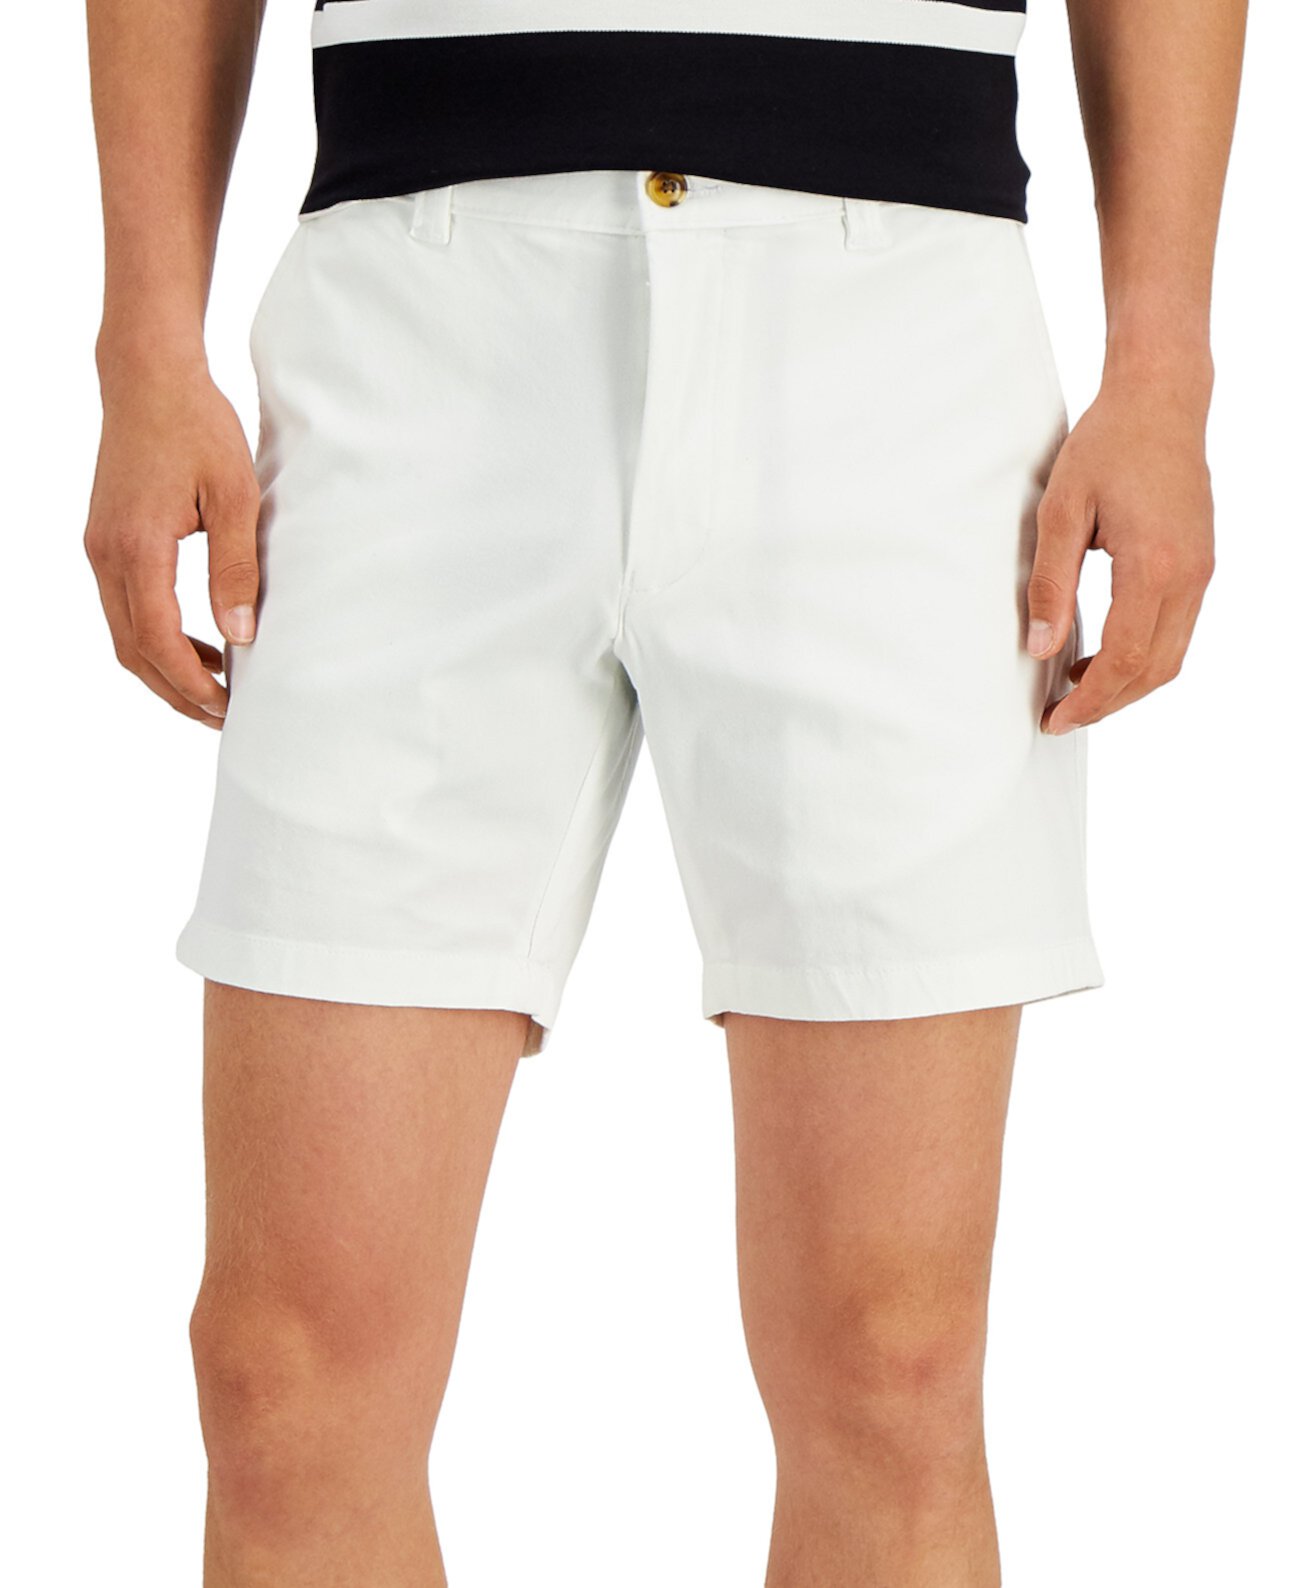 Мужские 7-дюймовые стретч-шорты стандартного кроя, созданные для Macy's Club Room